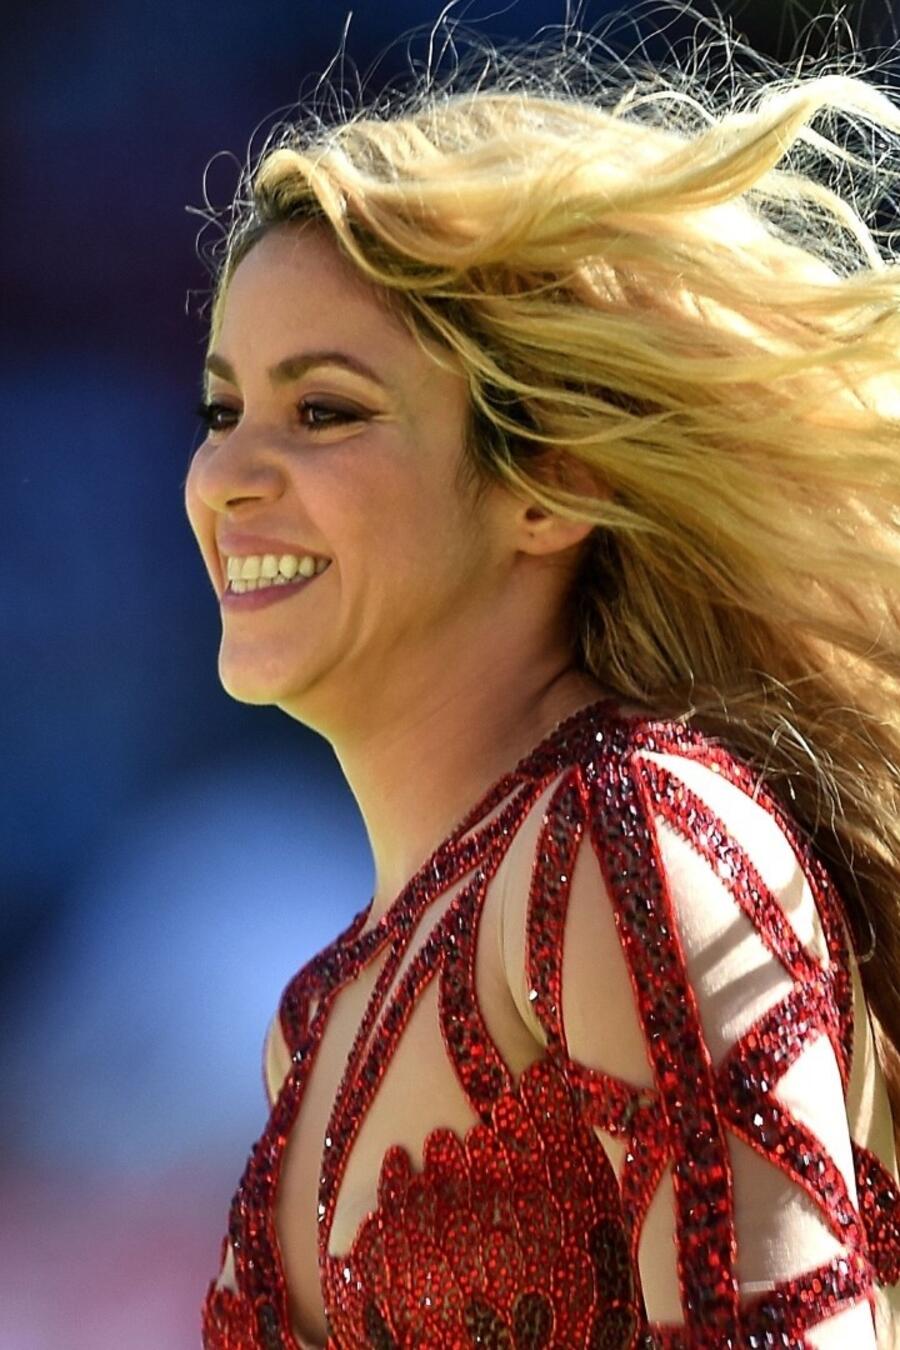 La cantante Shakira sonríe en una presentación en vivo. 